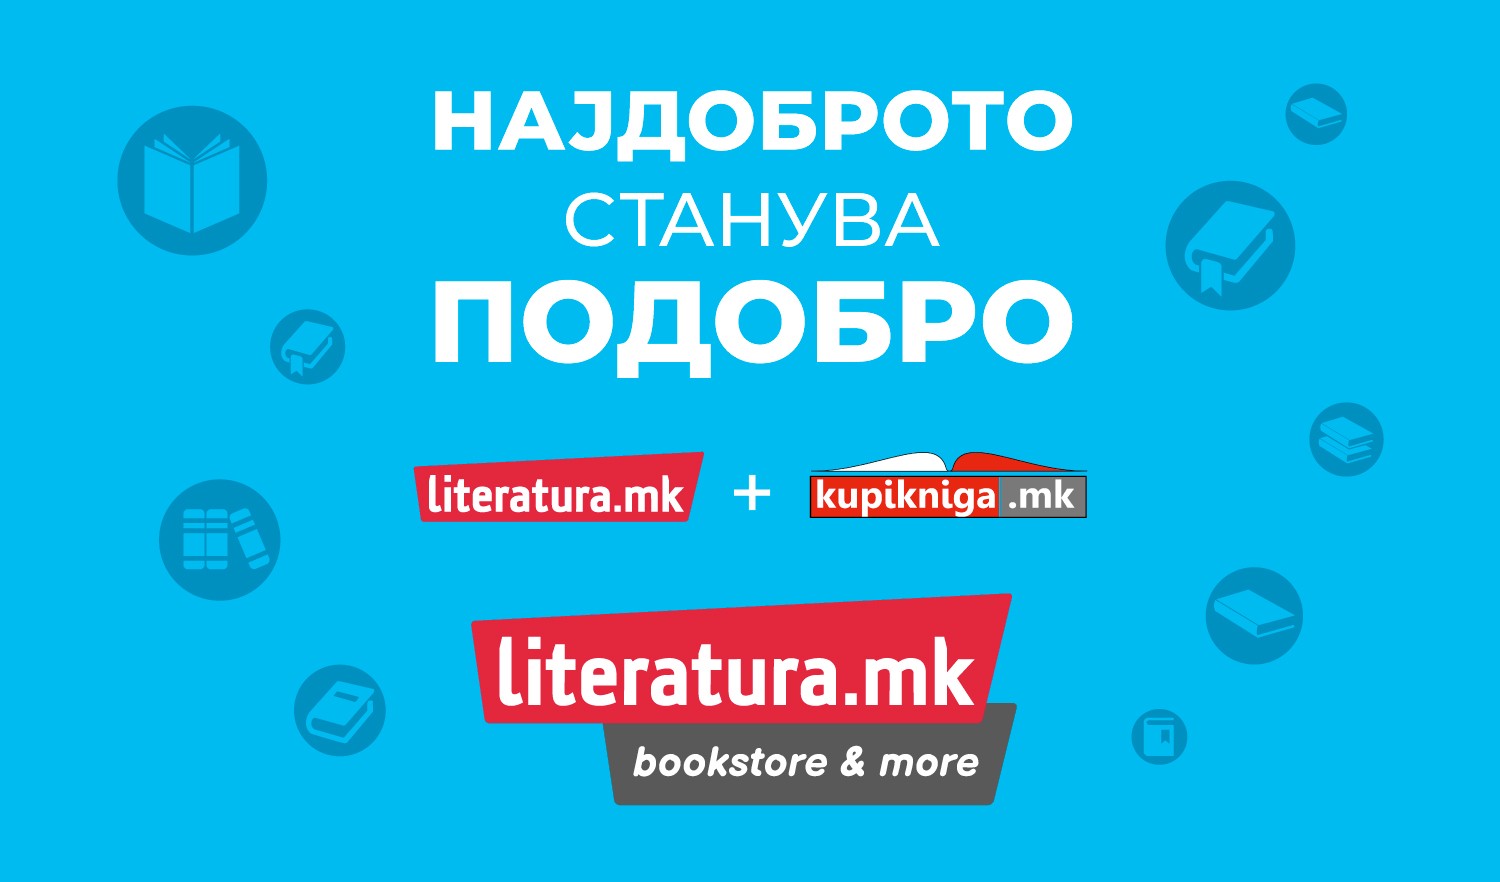 Најдоброто станува подобро: „Литература.мк“ и „Купикнига.мк“ стануваат едно